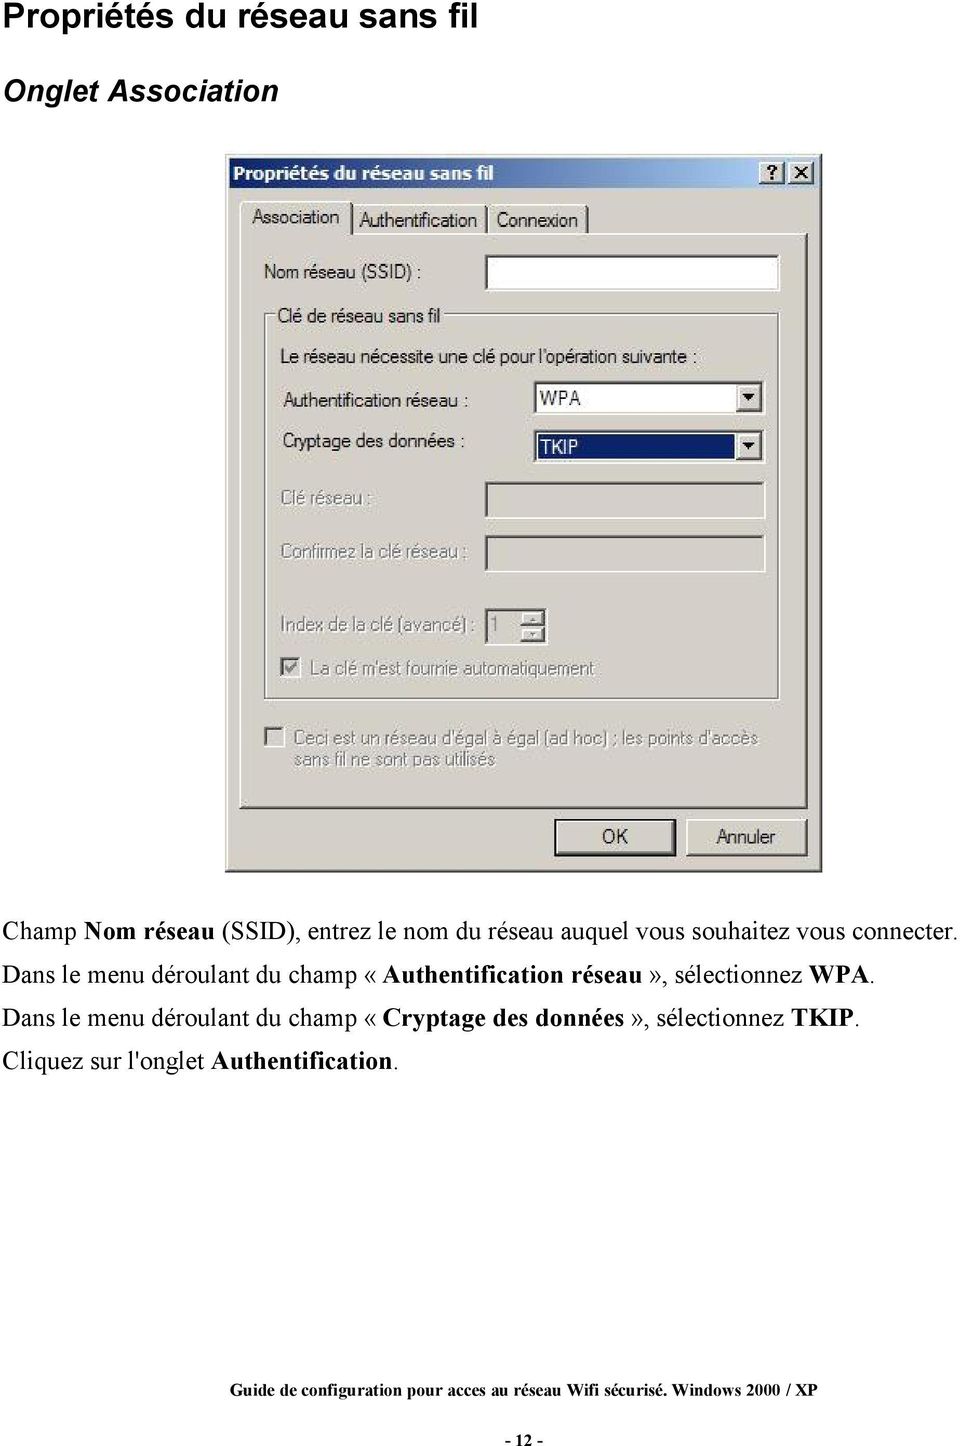 Dans le menu déroulant du champ «Authentification réseau», sélectionnez WPA.